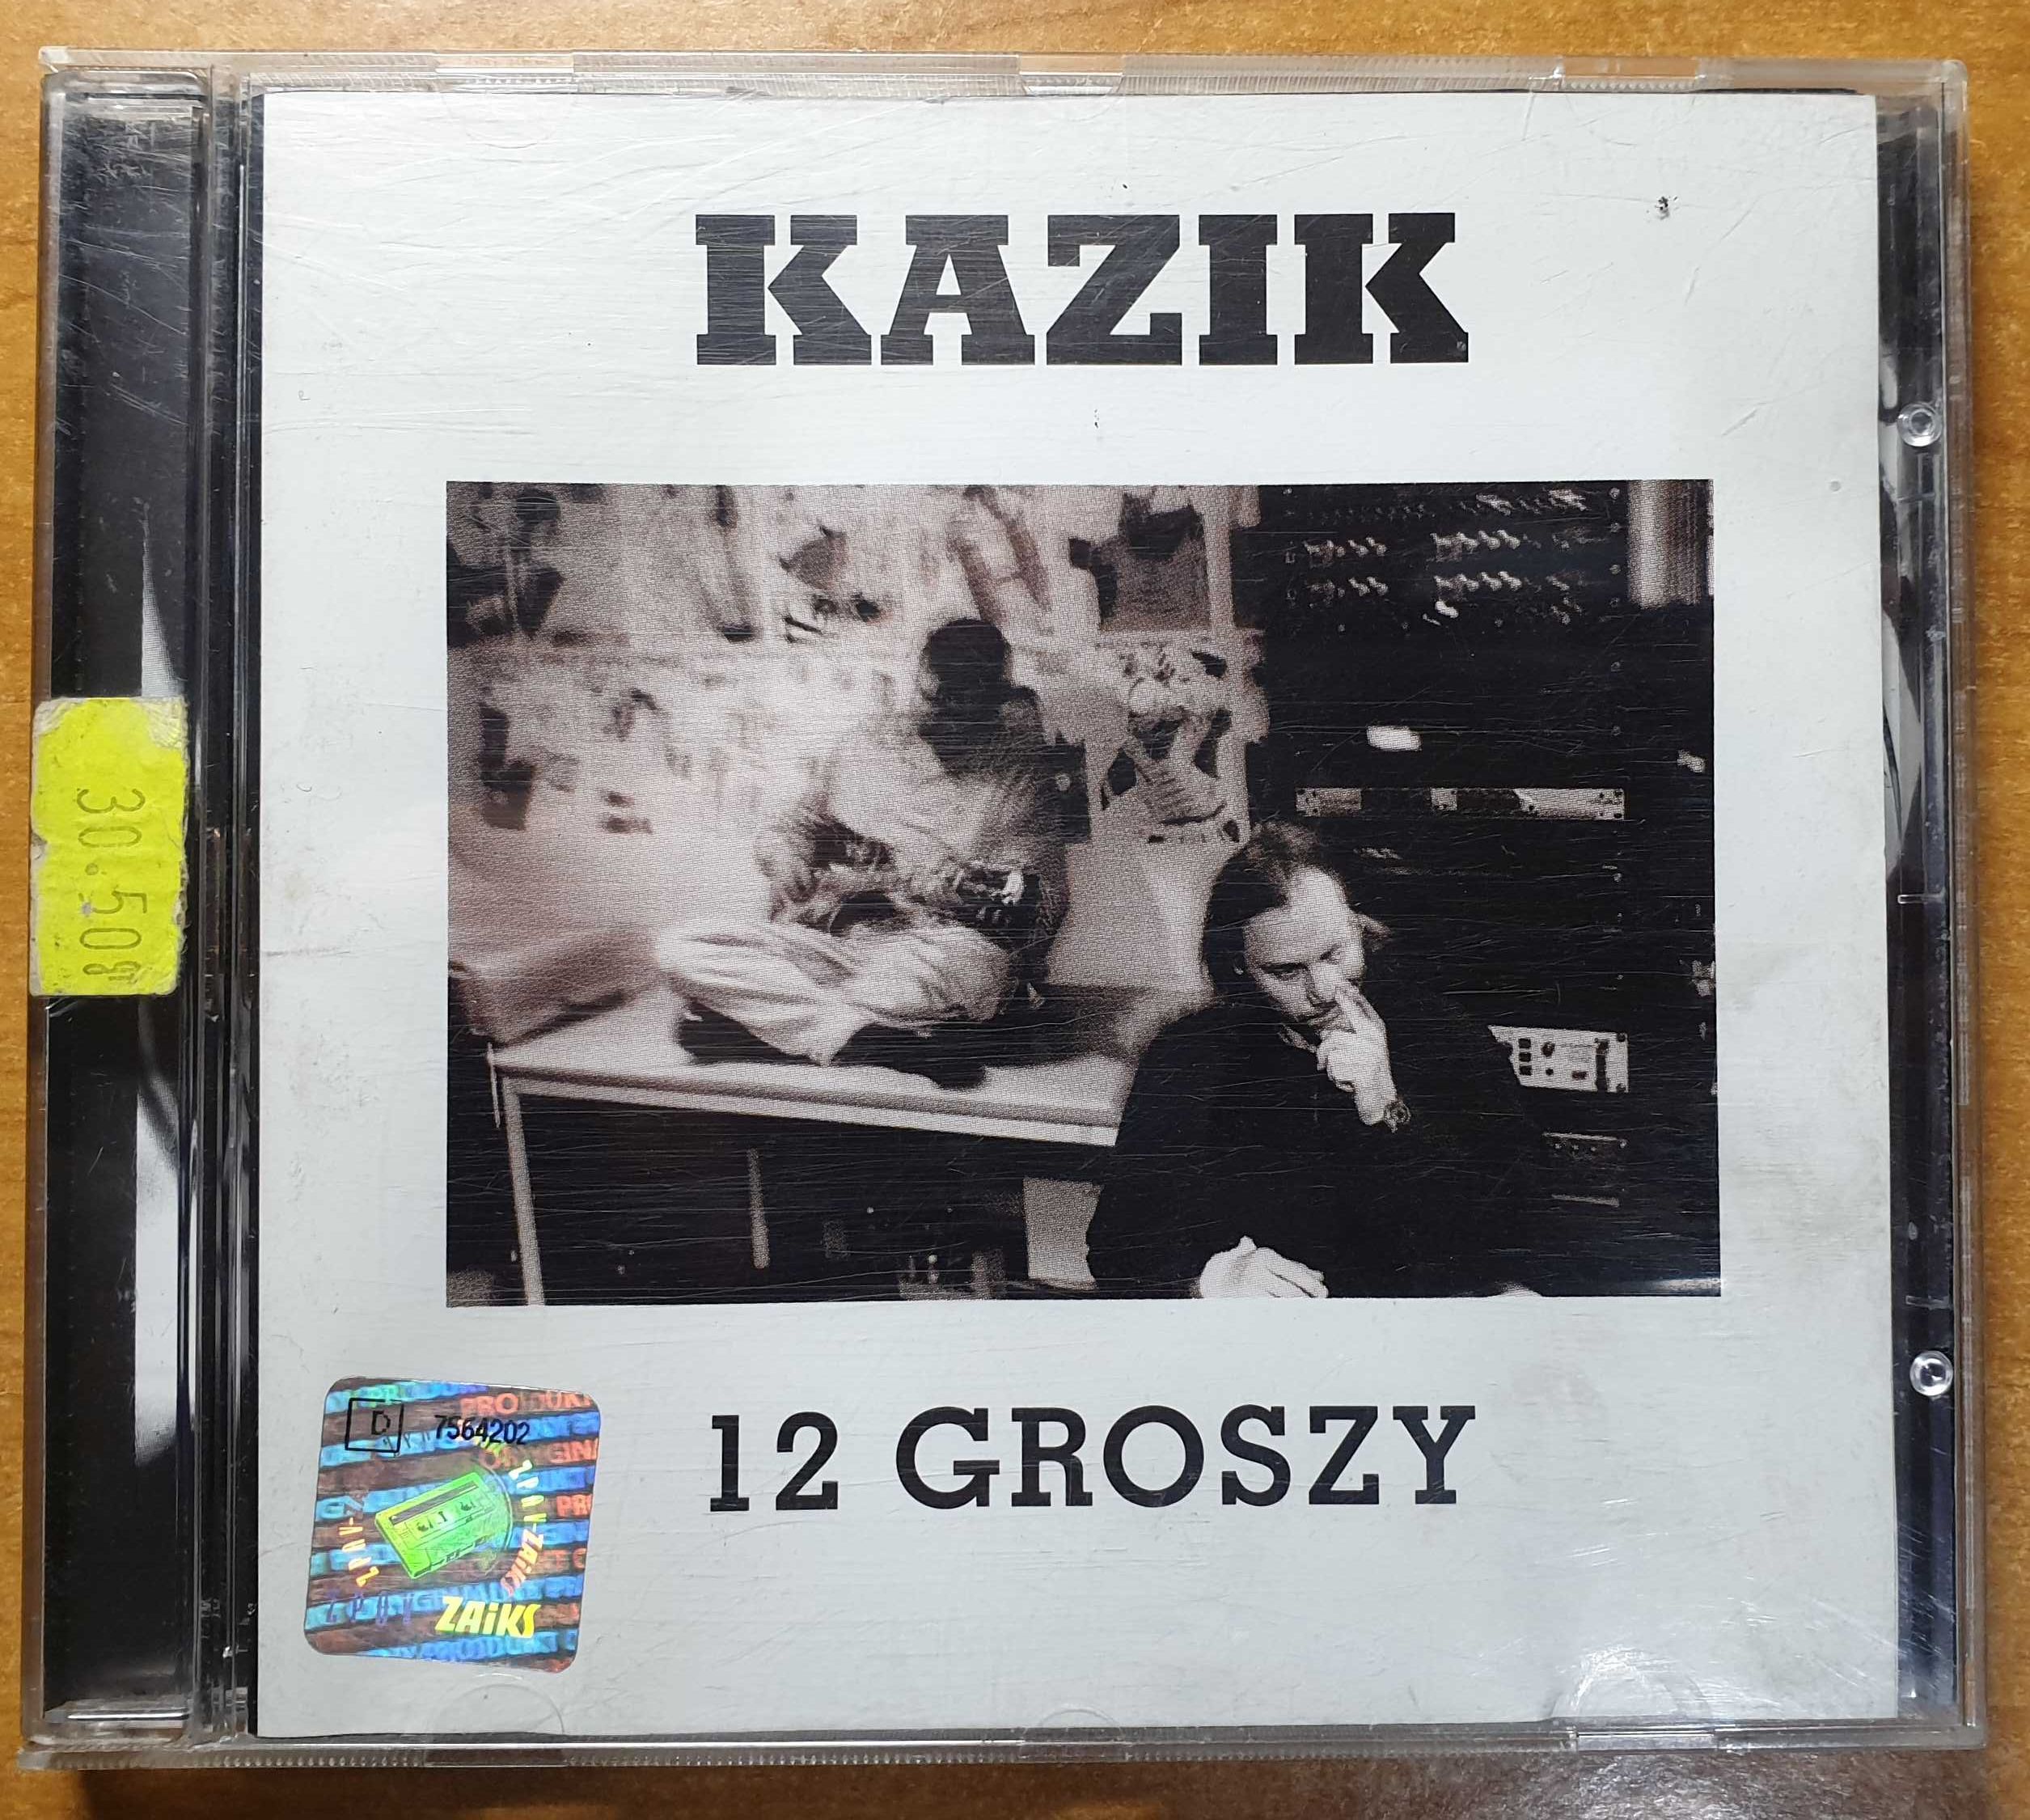 KAZIK 12 groszy (KULT, KNŻ) płyta audio CD pierwsze wydanie '97